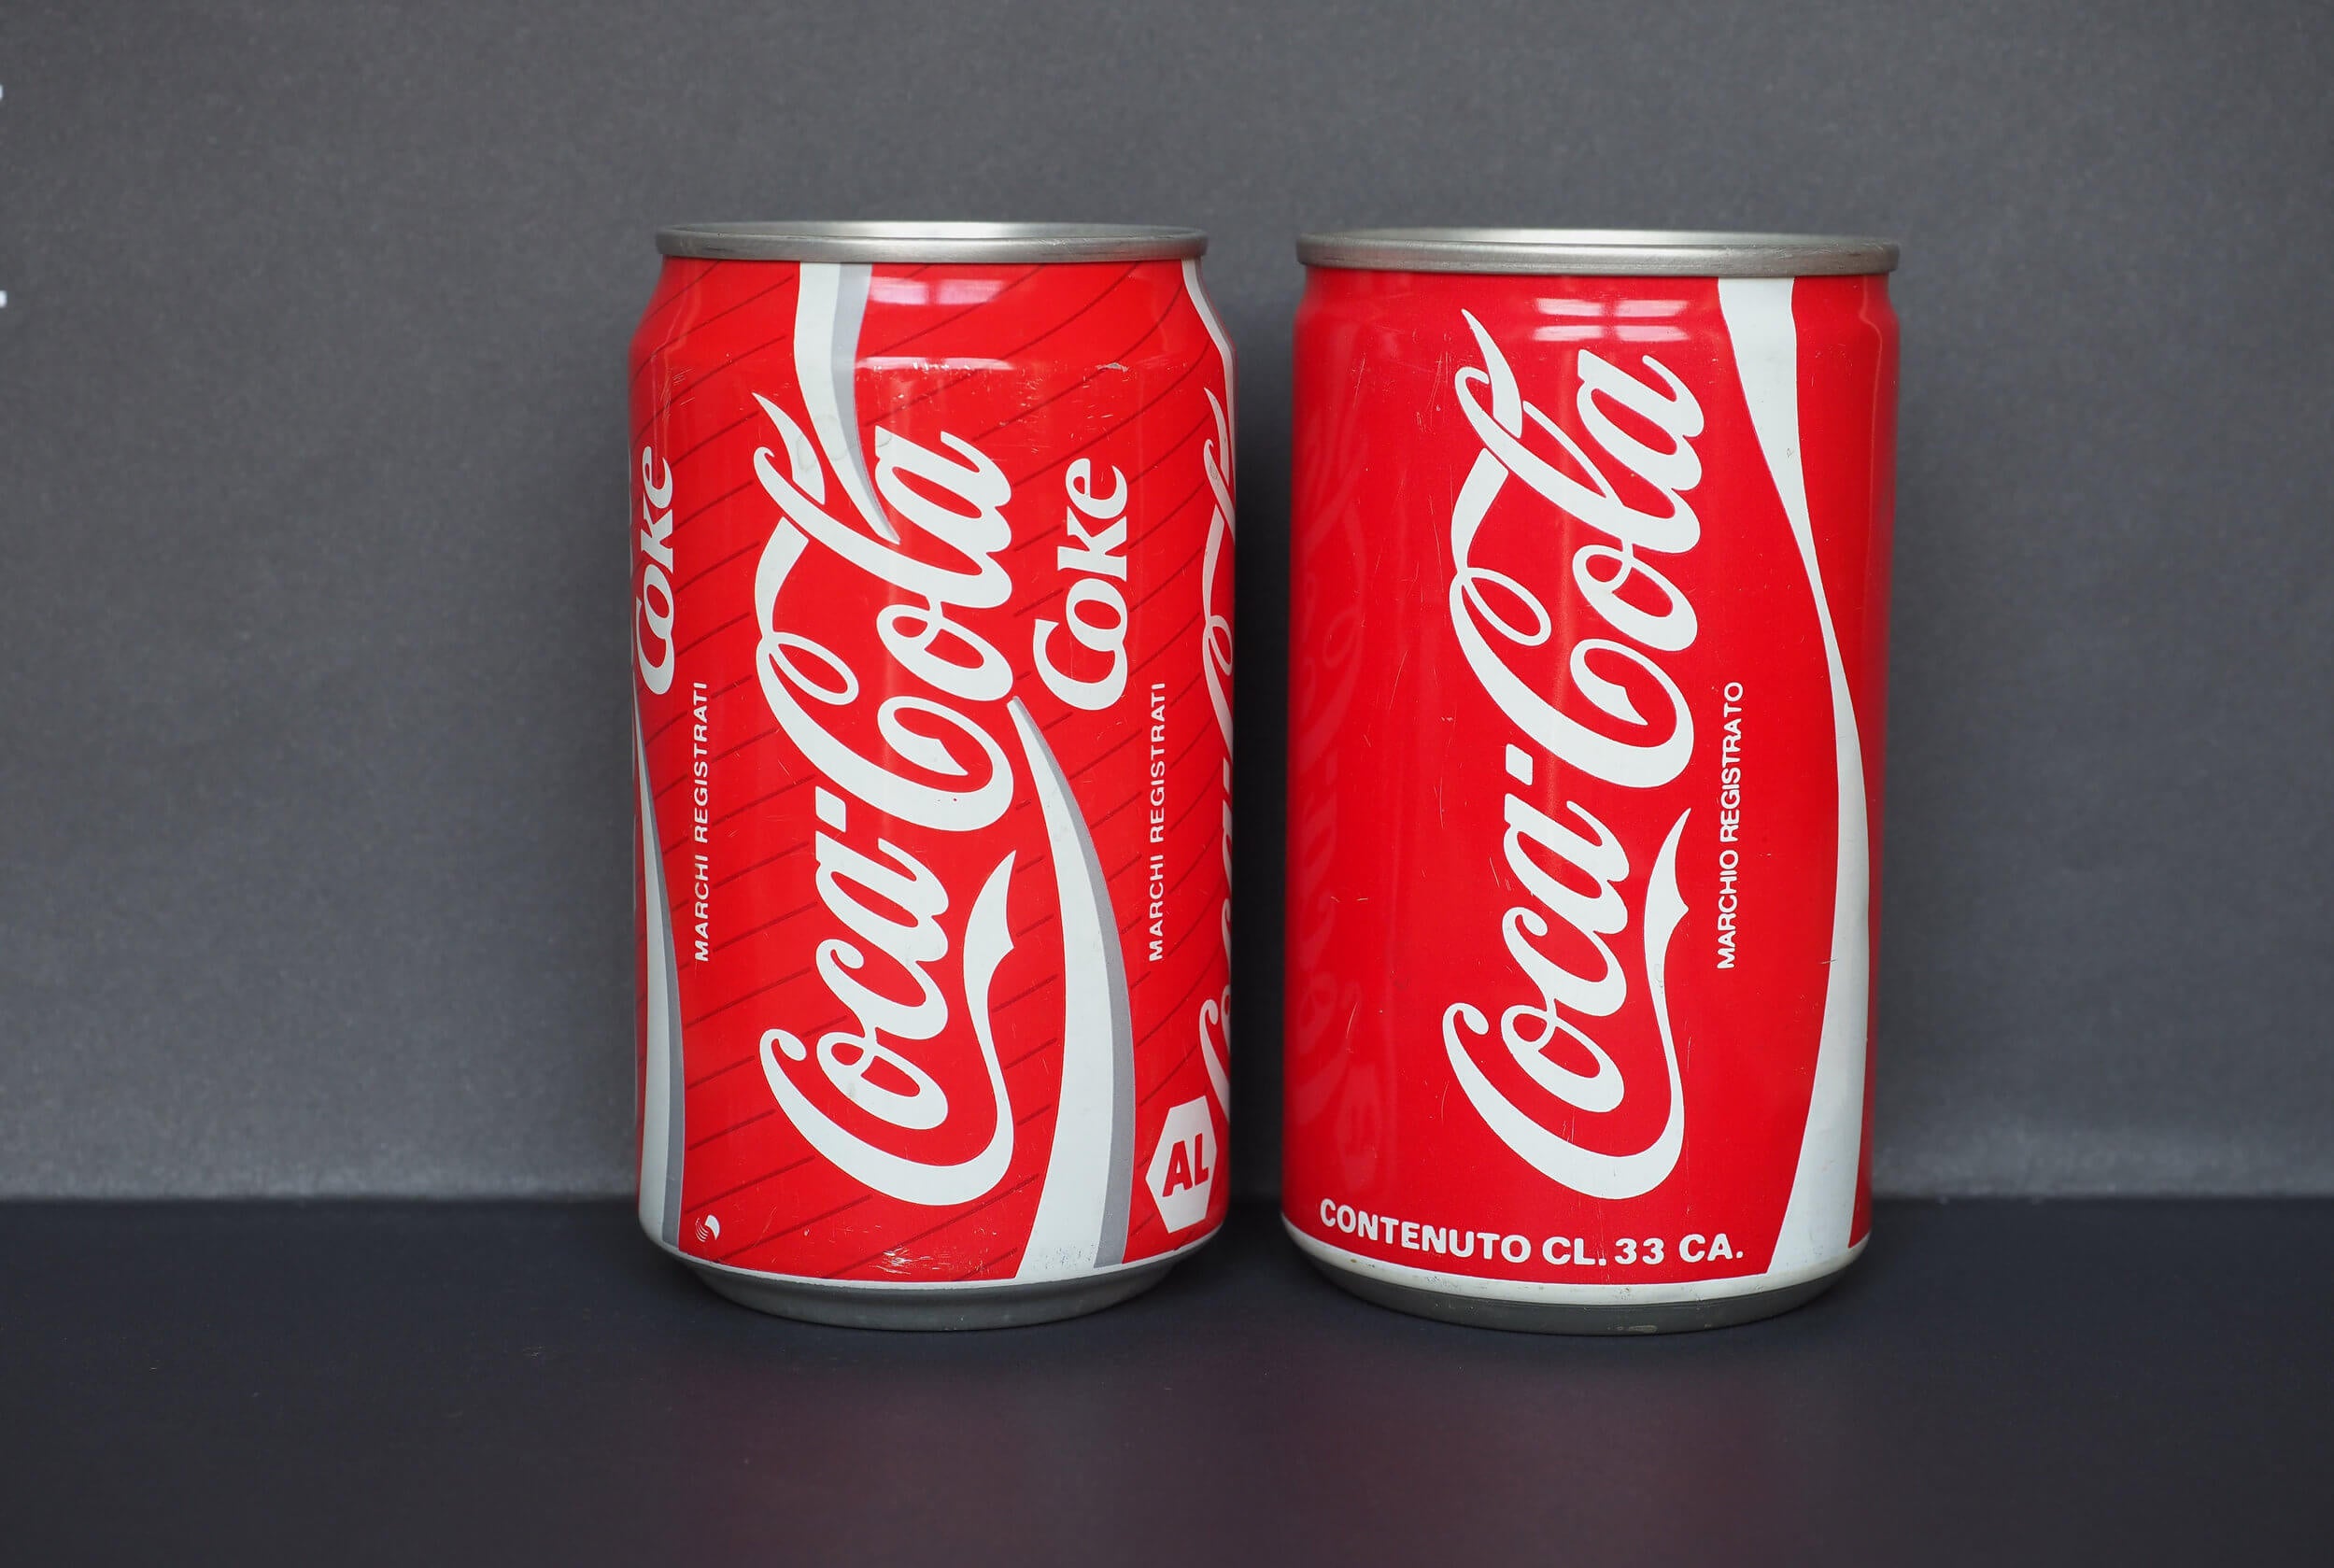 Las preguntas de cultura general incluyen algunas sobre la Coca-Cola